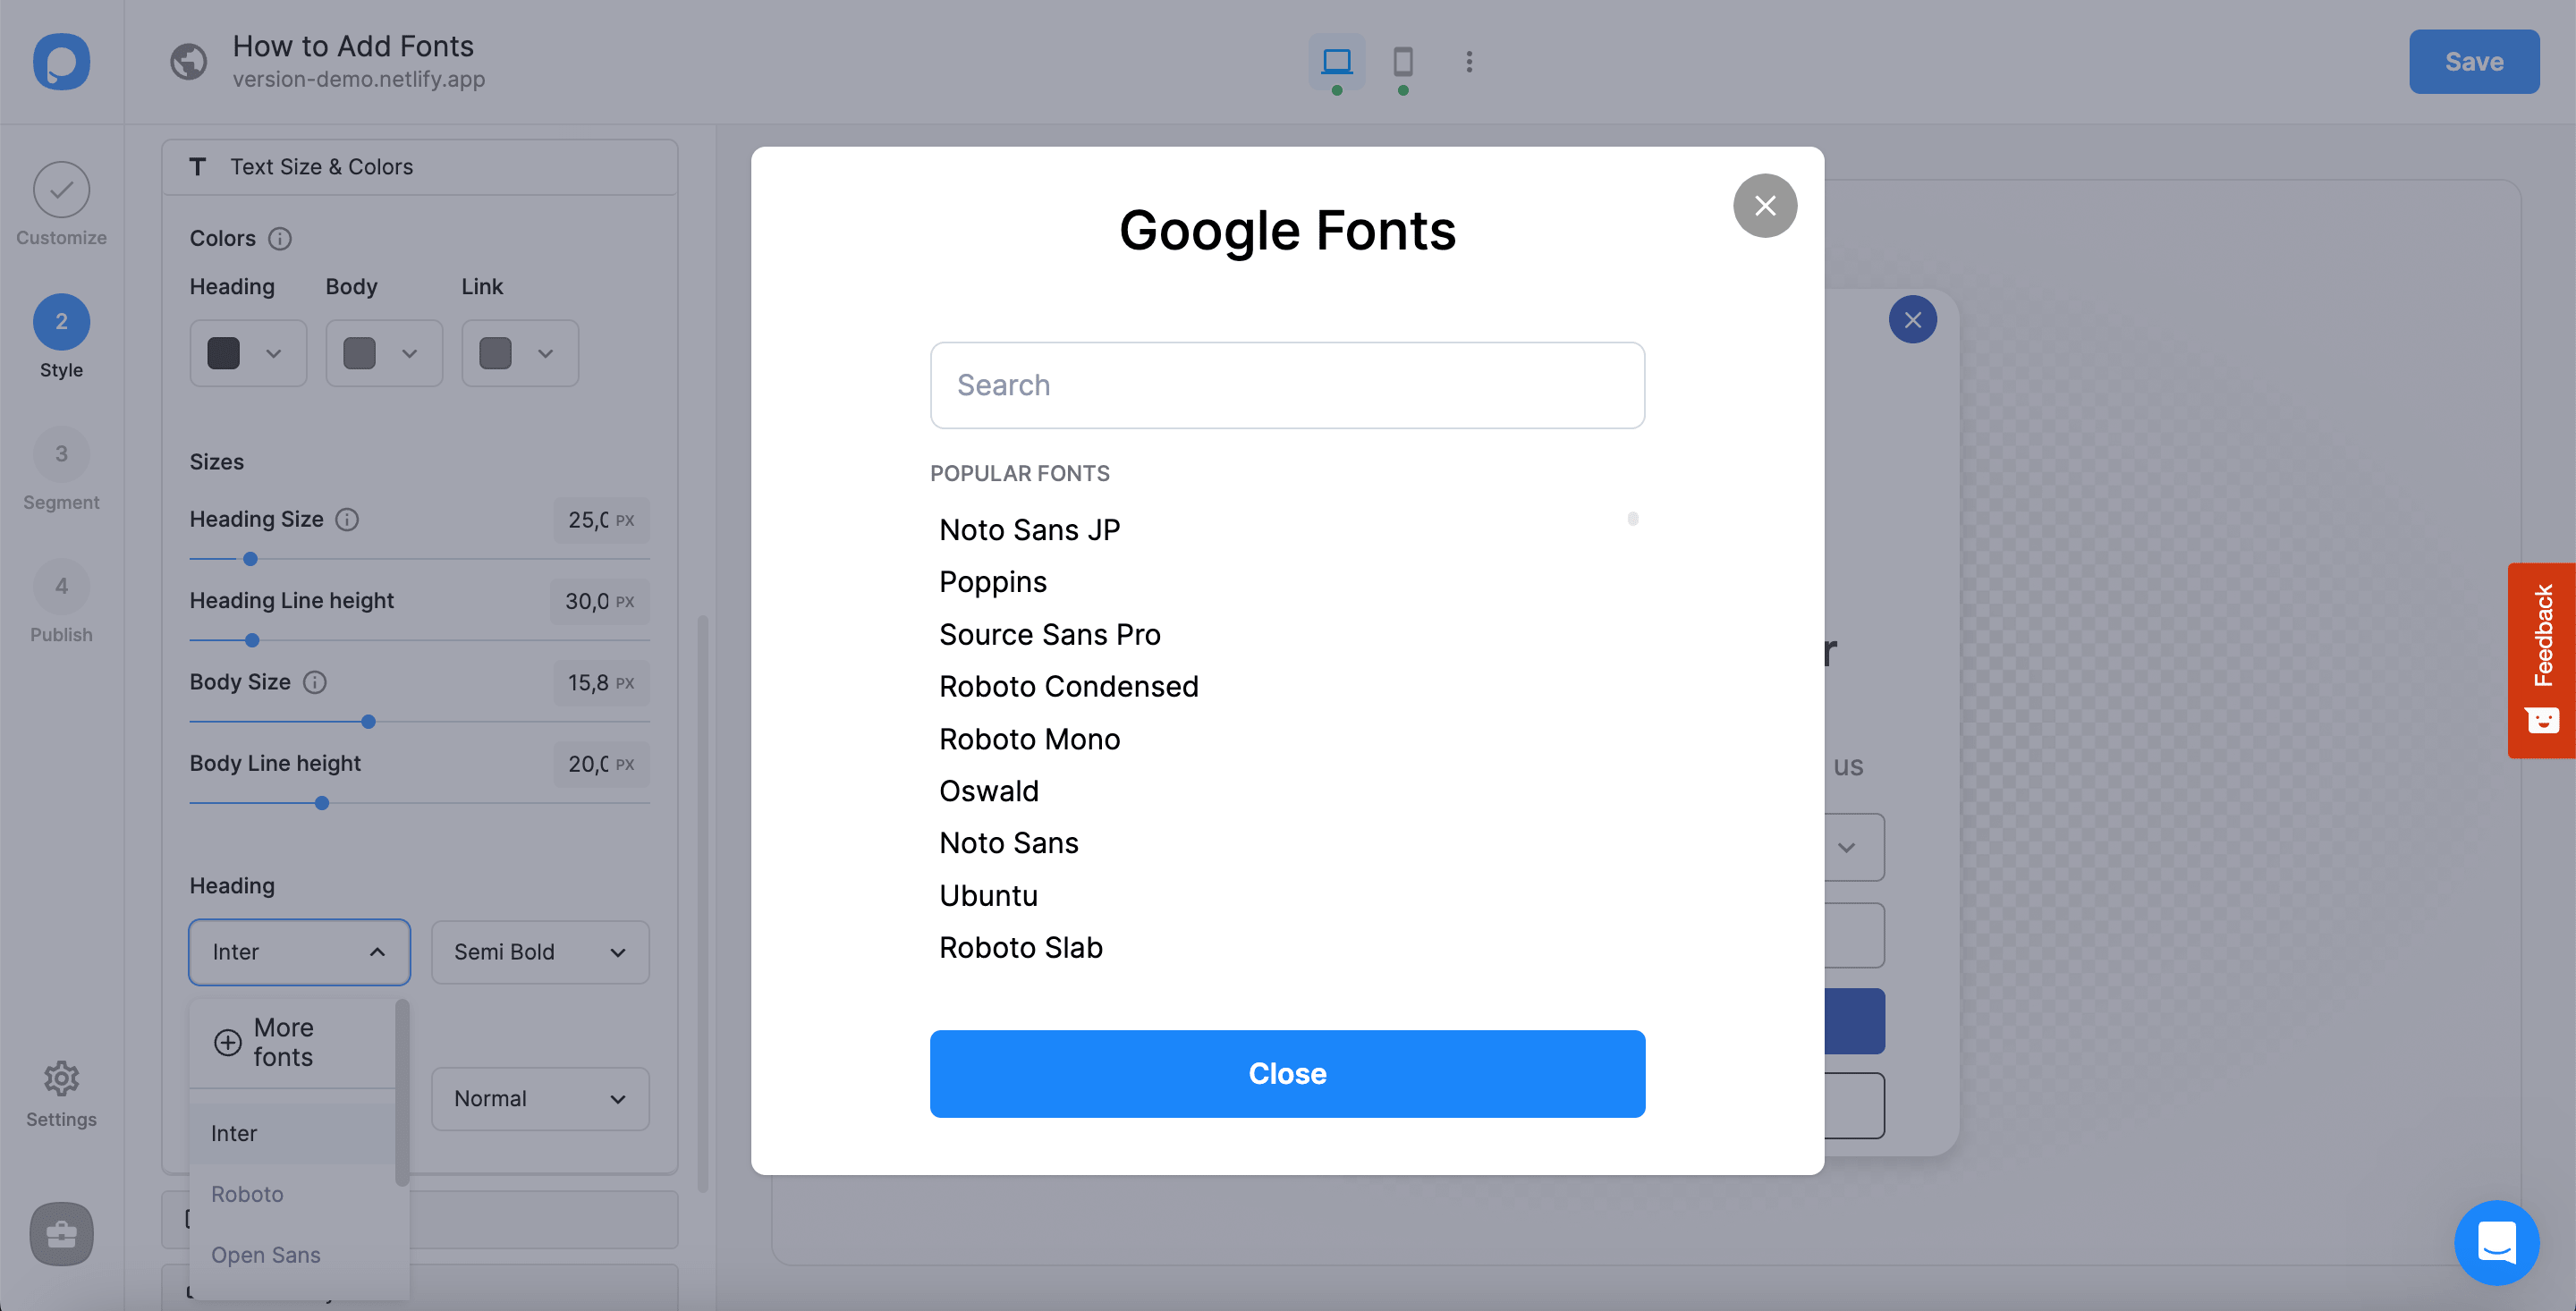 google fonts